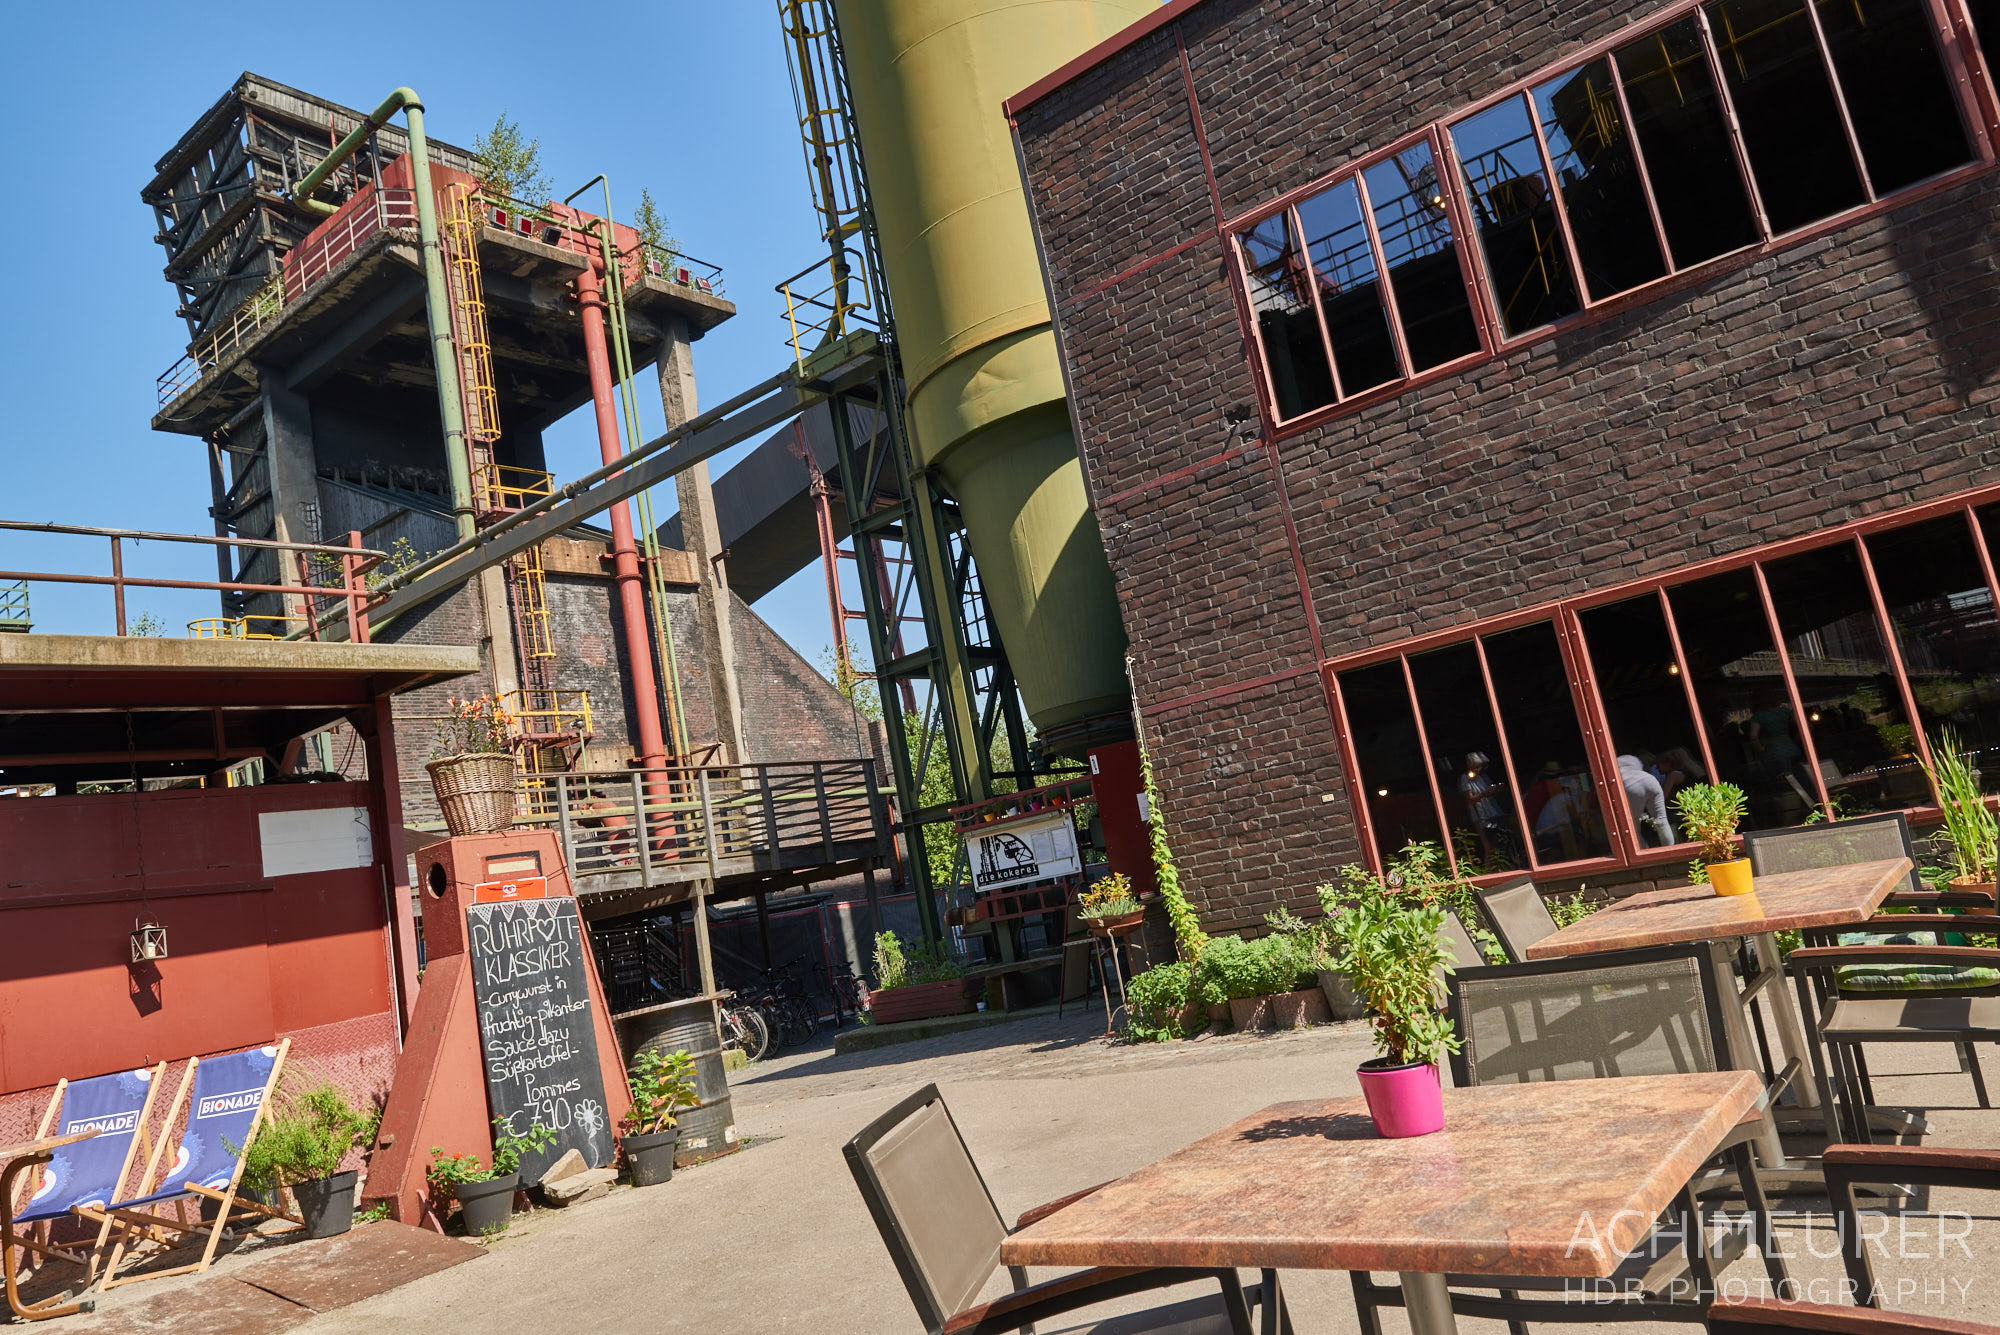 Zeche Zollverein in Essen Ruhrgebiet